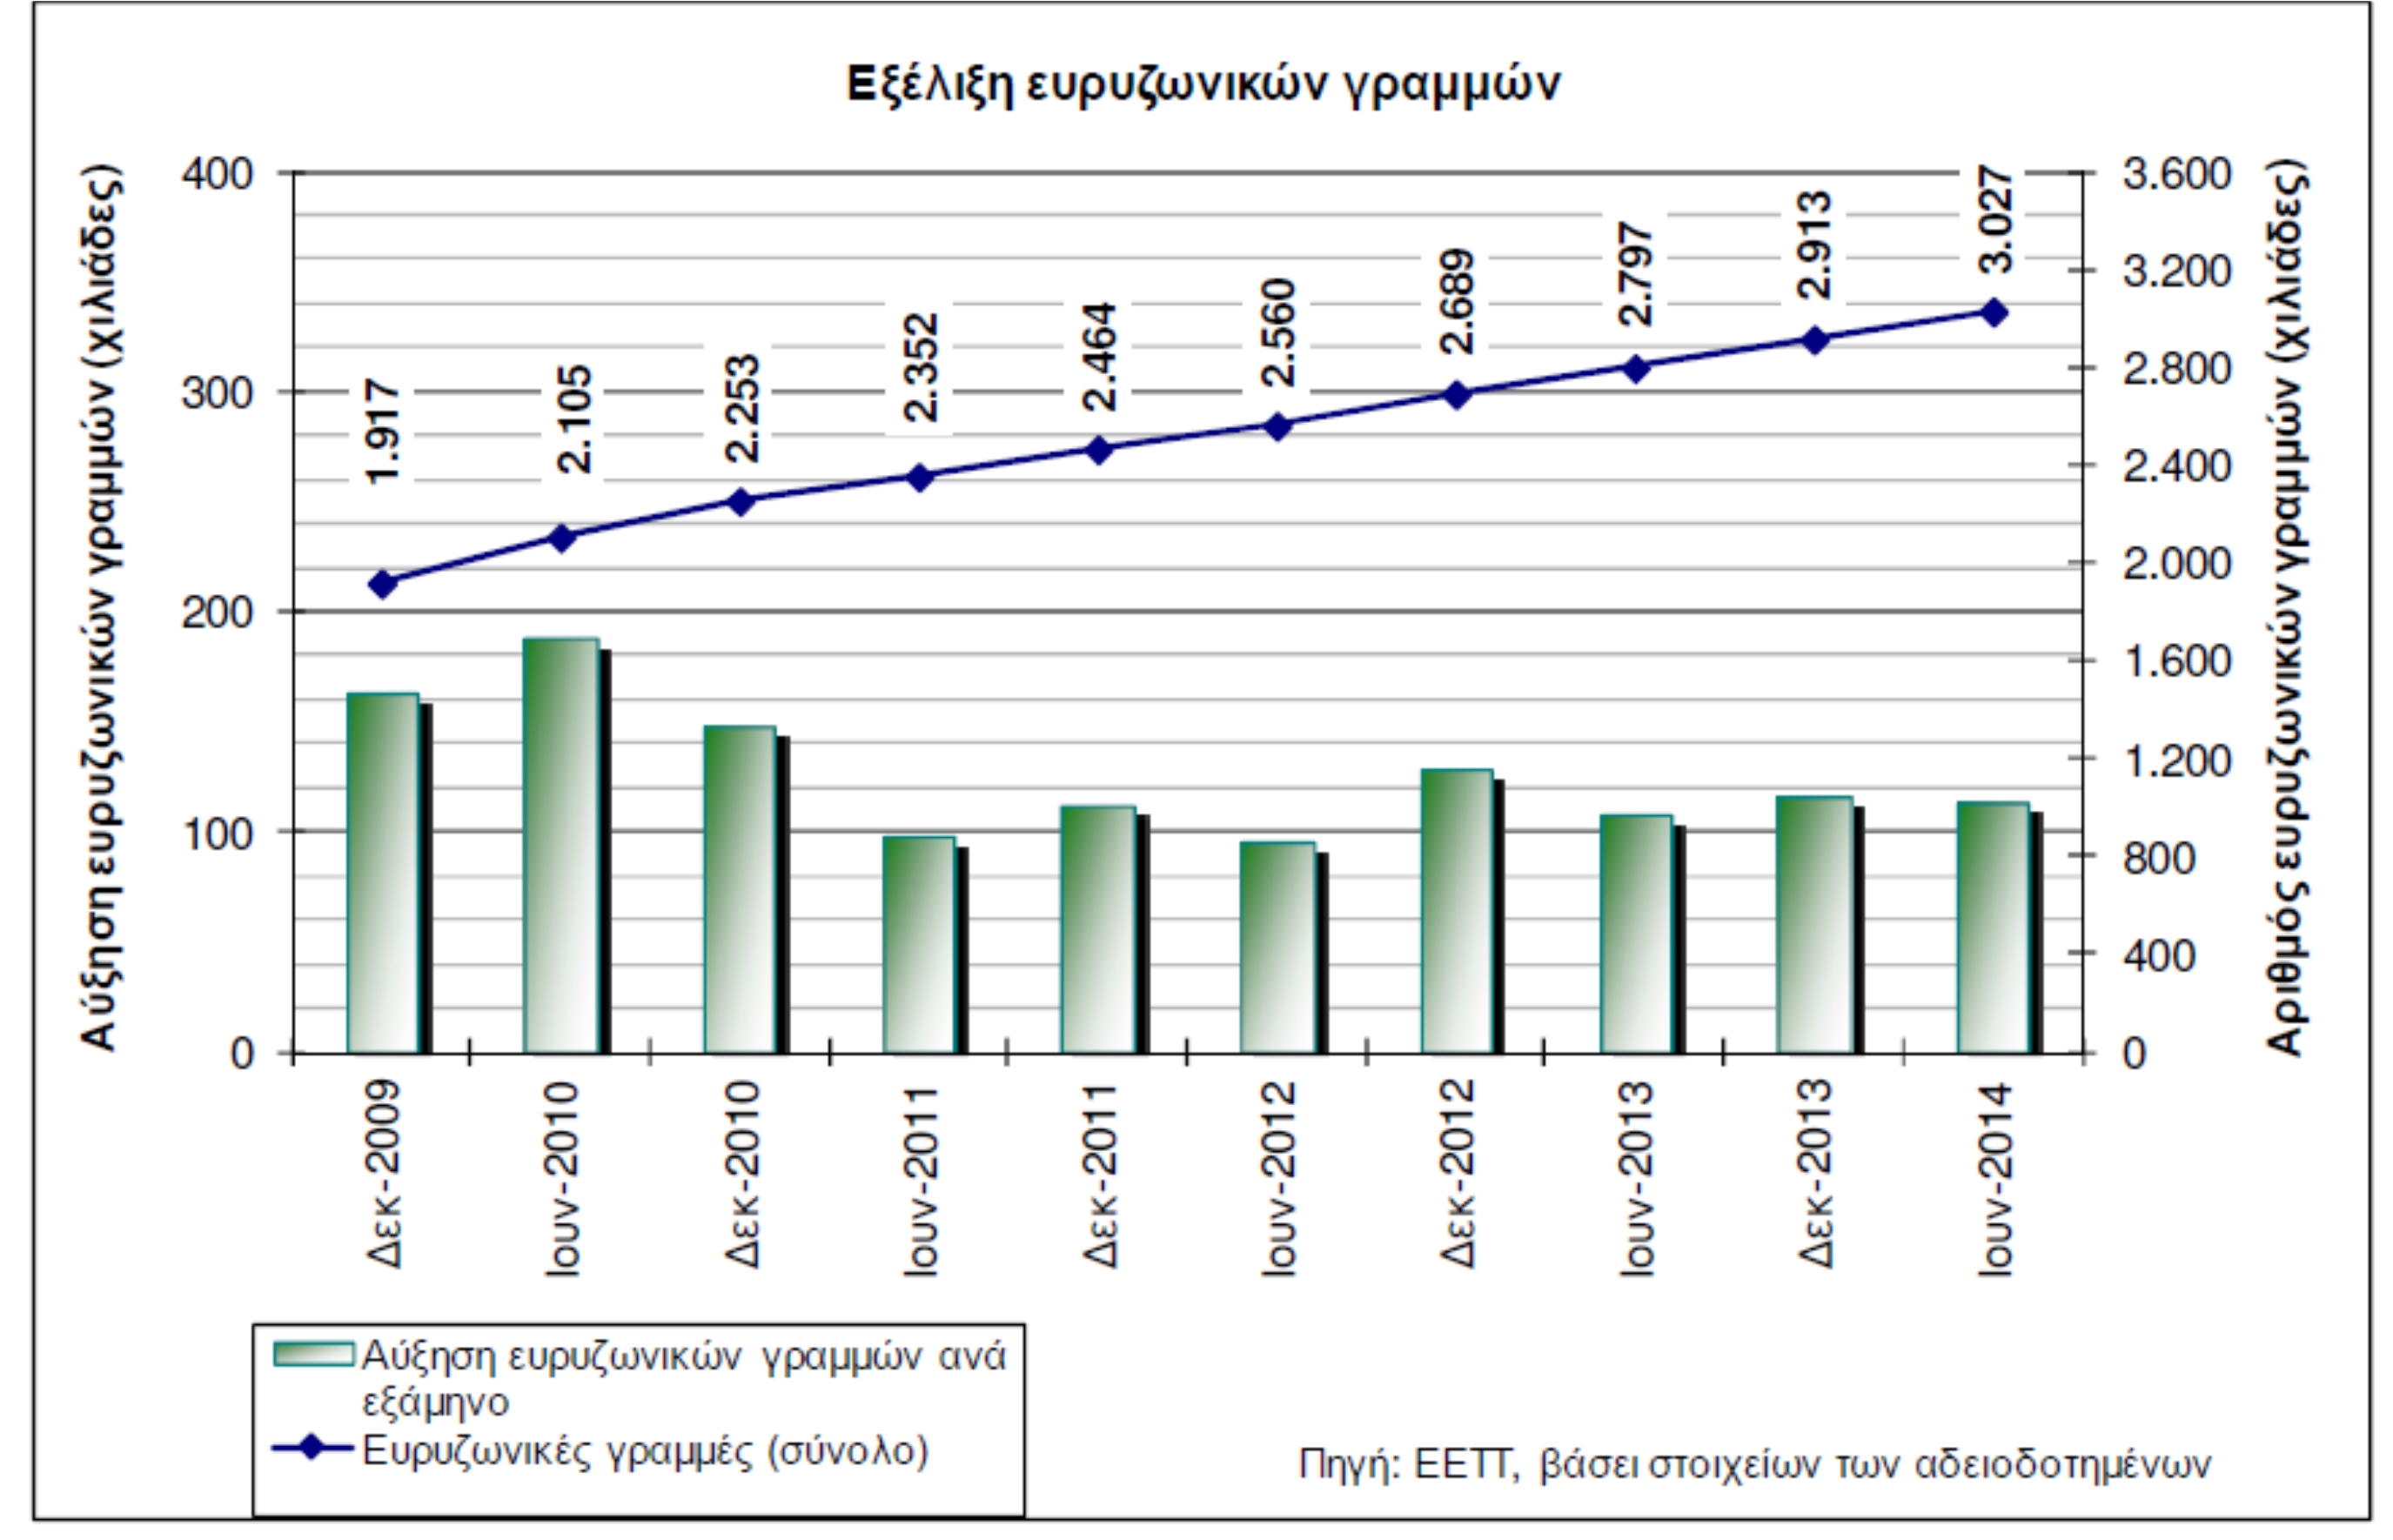 Εξέλιξη ευρυζωνικών γραμμών Ιούλιος 2014: